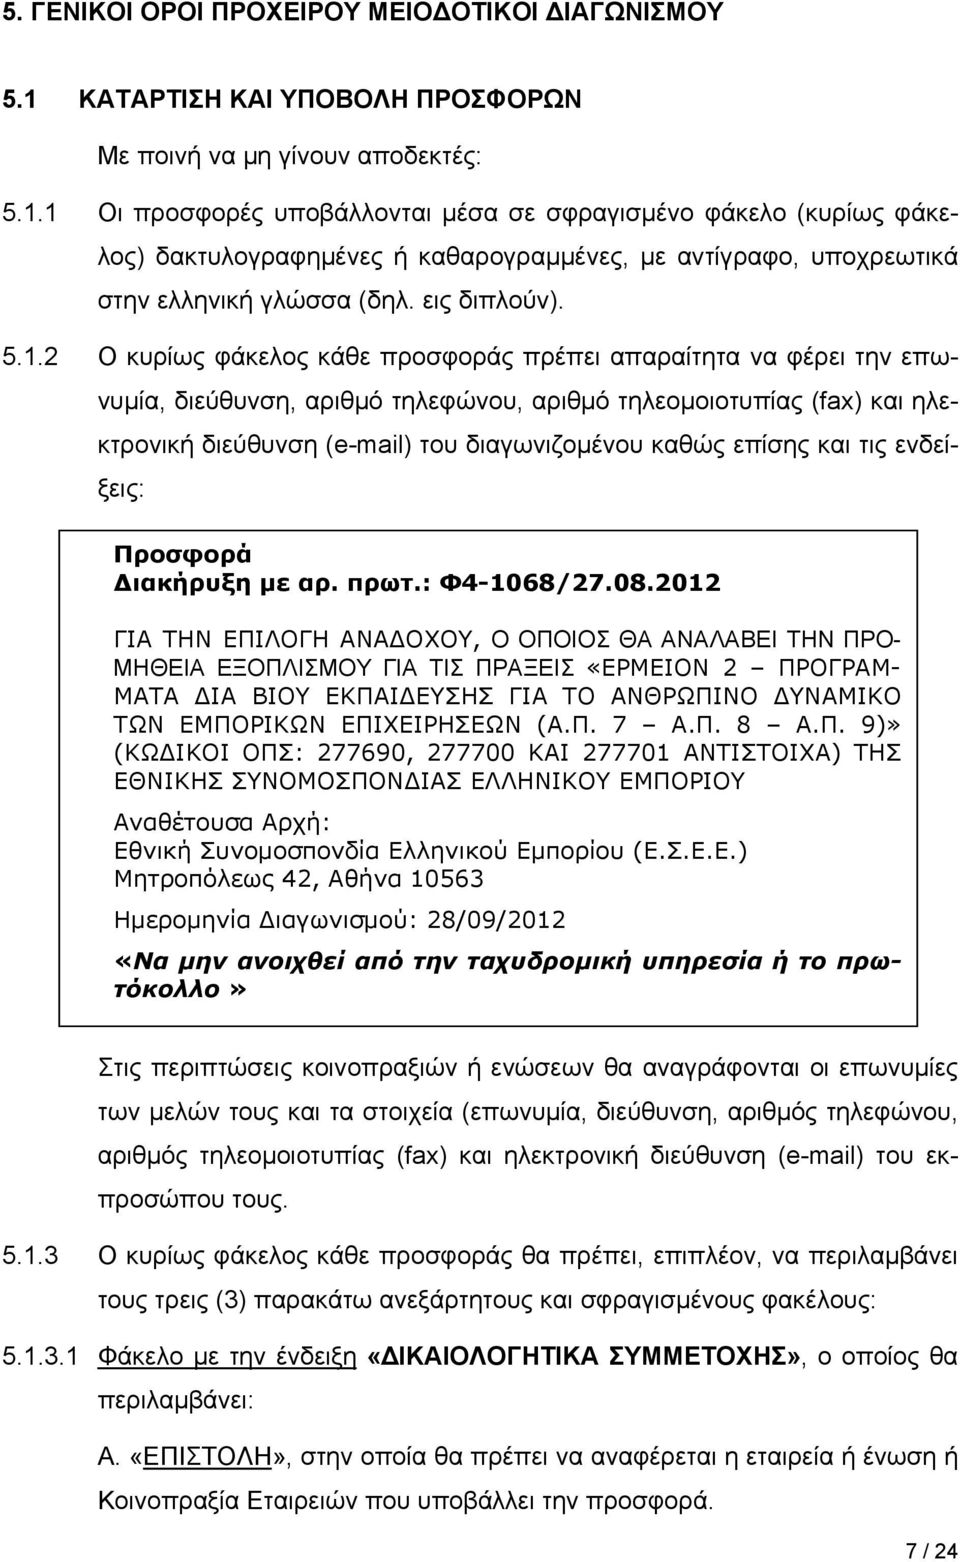 1 Οι προσφορές υποβάλλονται μέσα σε σφραγισμένο φάκελο (κυρίως φάκελος) δακτυλογραφημένες ή καθαρογραμμένες, με αντίγραφο, υποχρεωτικά στην ελληνική γλώσσα (δηλ. εις διπλούν). 5.1.2 Ο κυρίως φάκελος